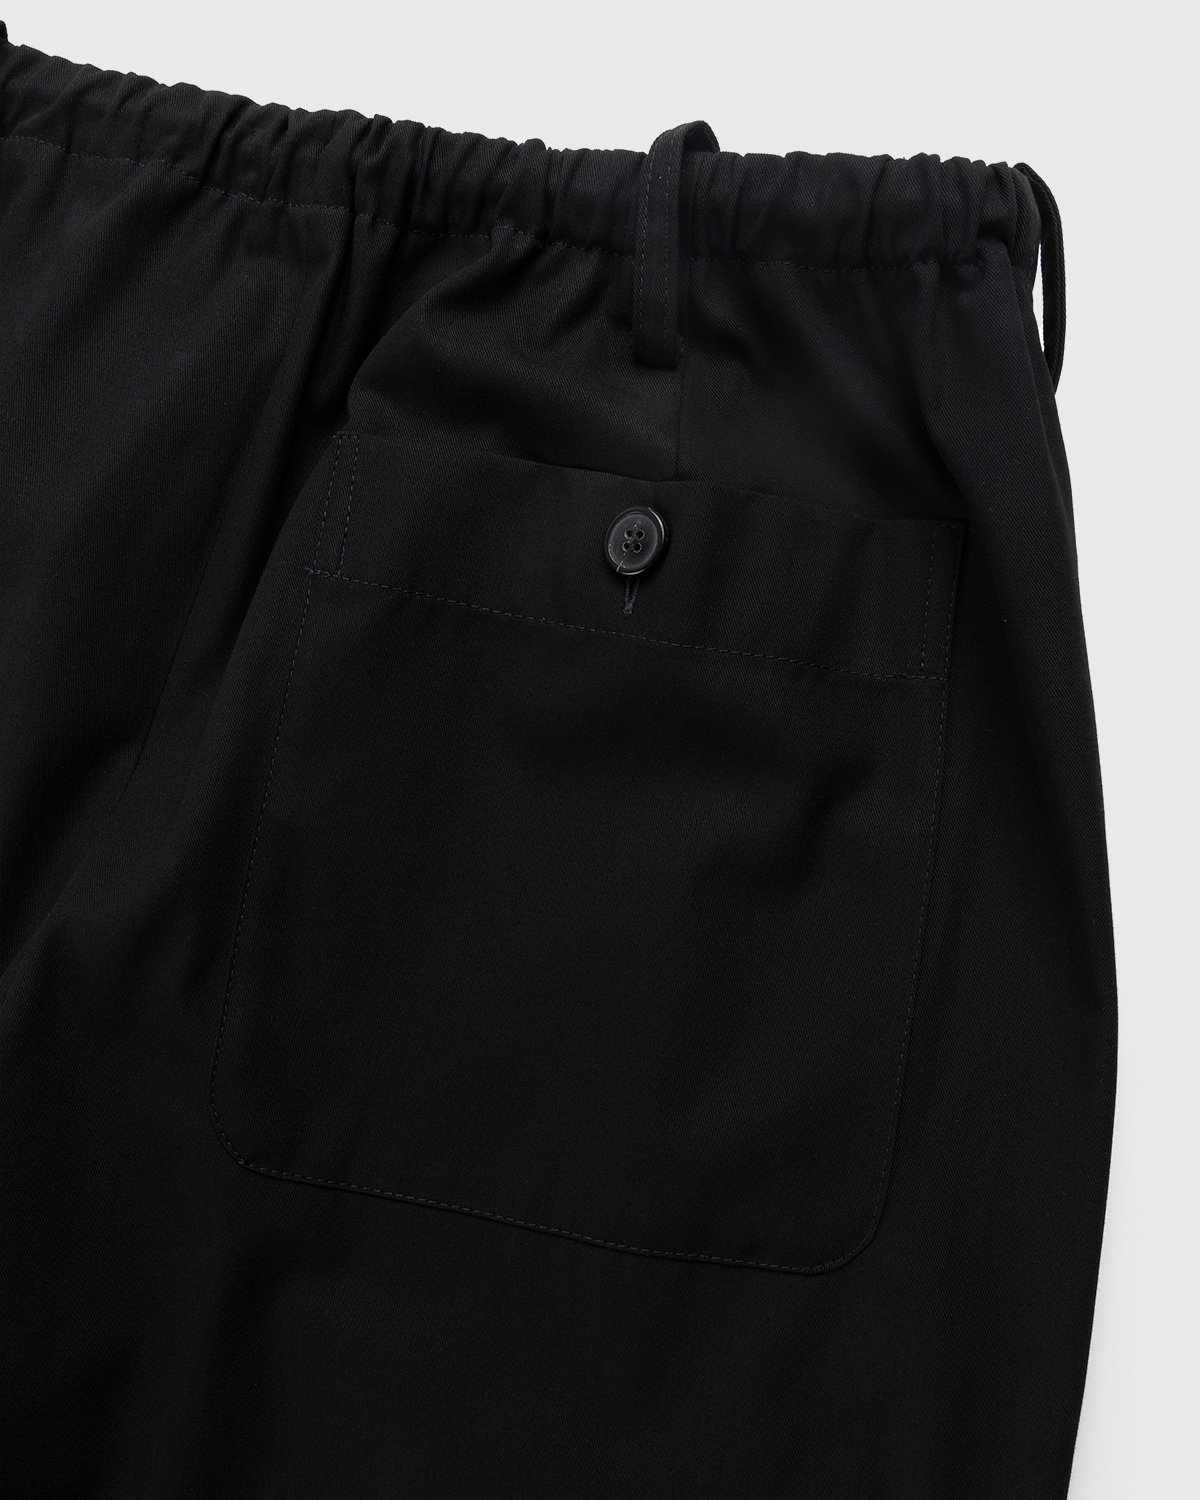 Dries van Noten - Penny Pants Black - Clothing - Black - Image 3